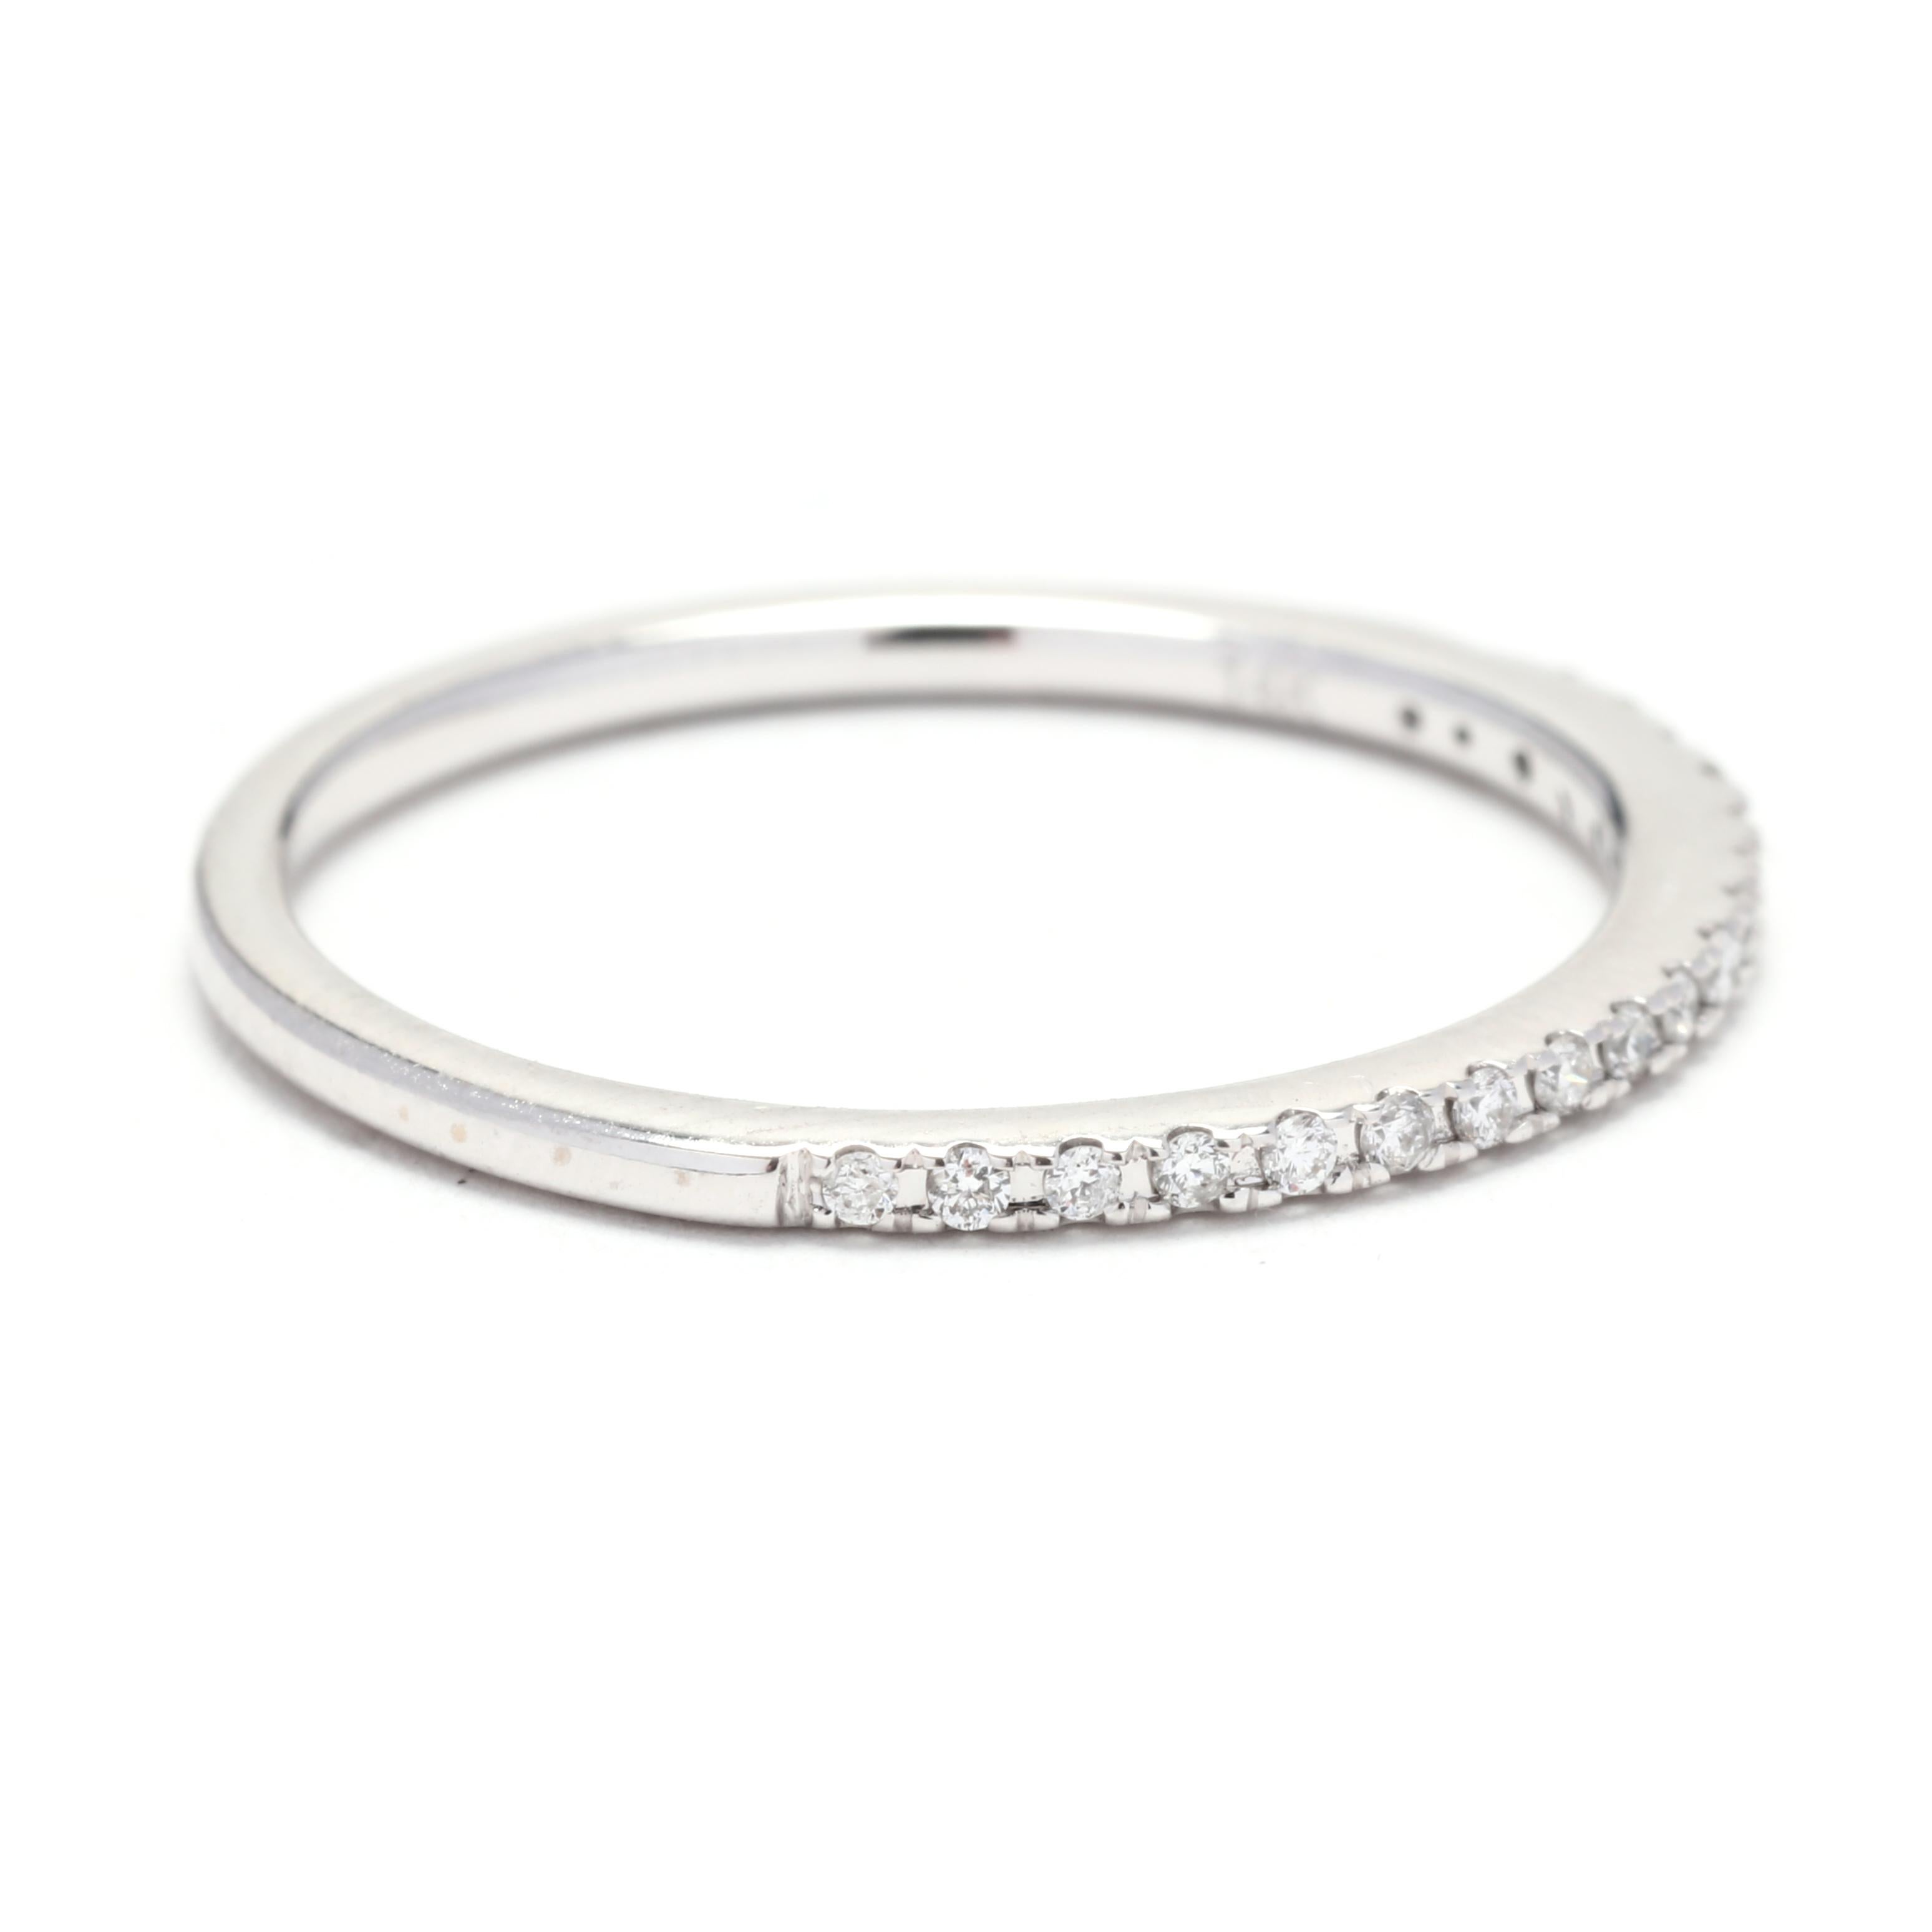 Dieser wunderschöne dünne Diamant-Trauring ist aus Platin gefertigt und hat ein Gesamtkaratgewicht von 0,25ctw. Die Ringgröße beträgt 4,75 und ist damit perfekt für einen zierlichen Finger geeignet. Das filigrane Design dieses Rings eignet sich